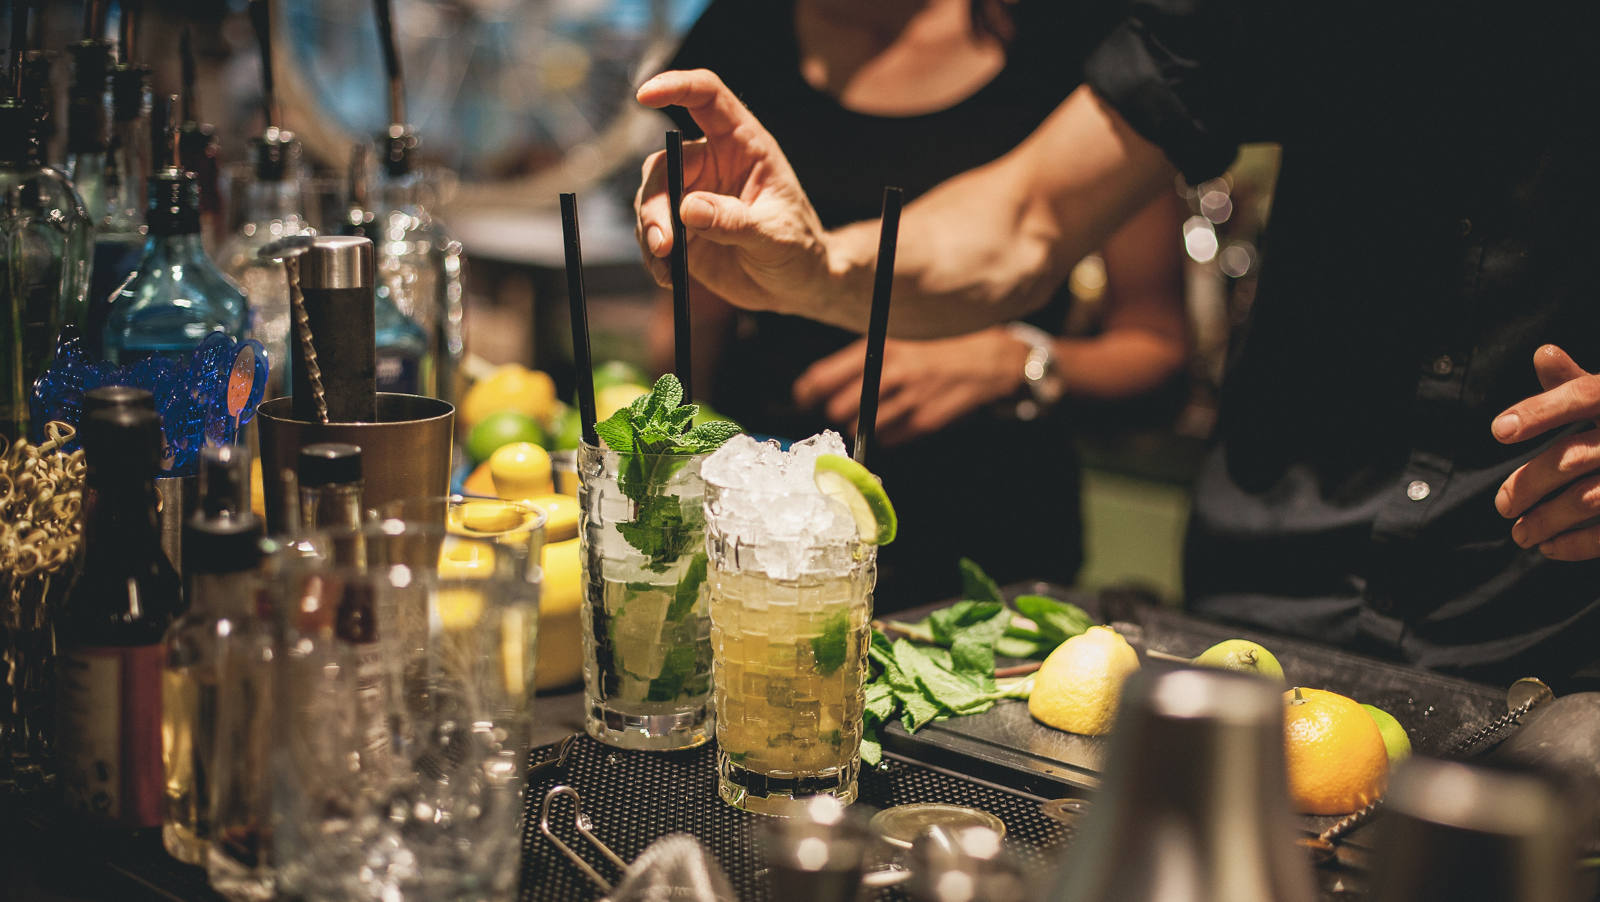 Mocktail: Das Bar-Personal bereitet ein alkoholfreies Getränk mit Zitrone und Minze vor.